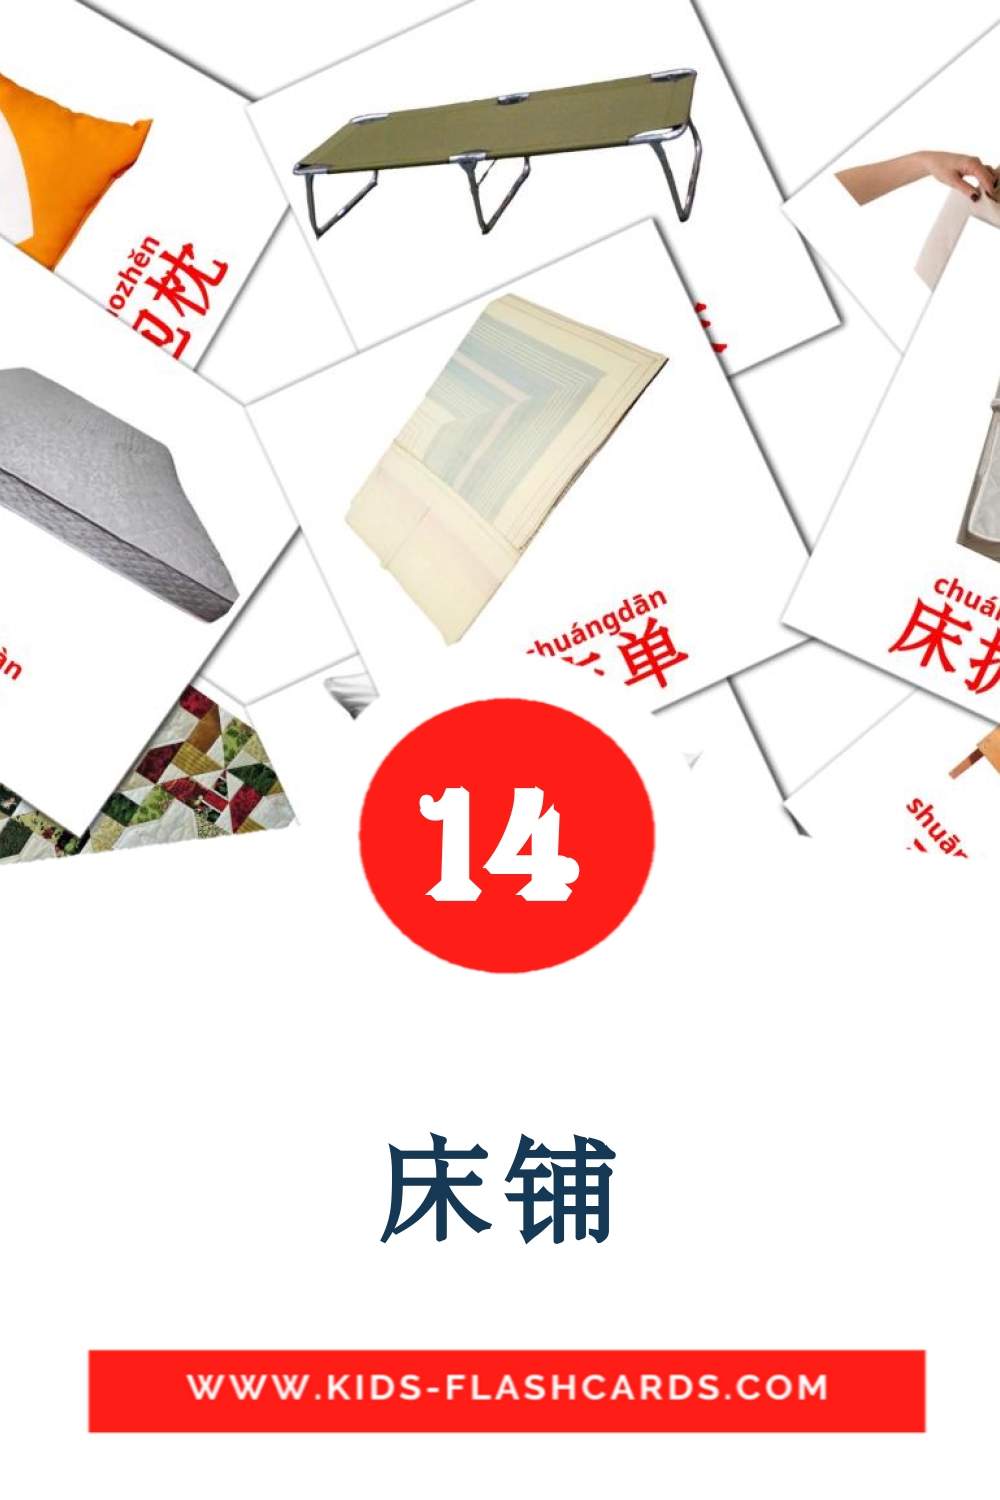 14 tarjetas didacticas de 床铺 para el jardín de infancia en chino(simplificado)